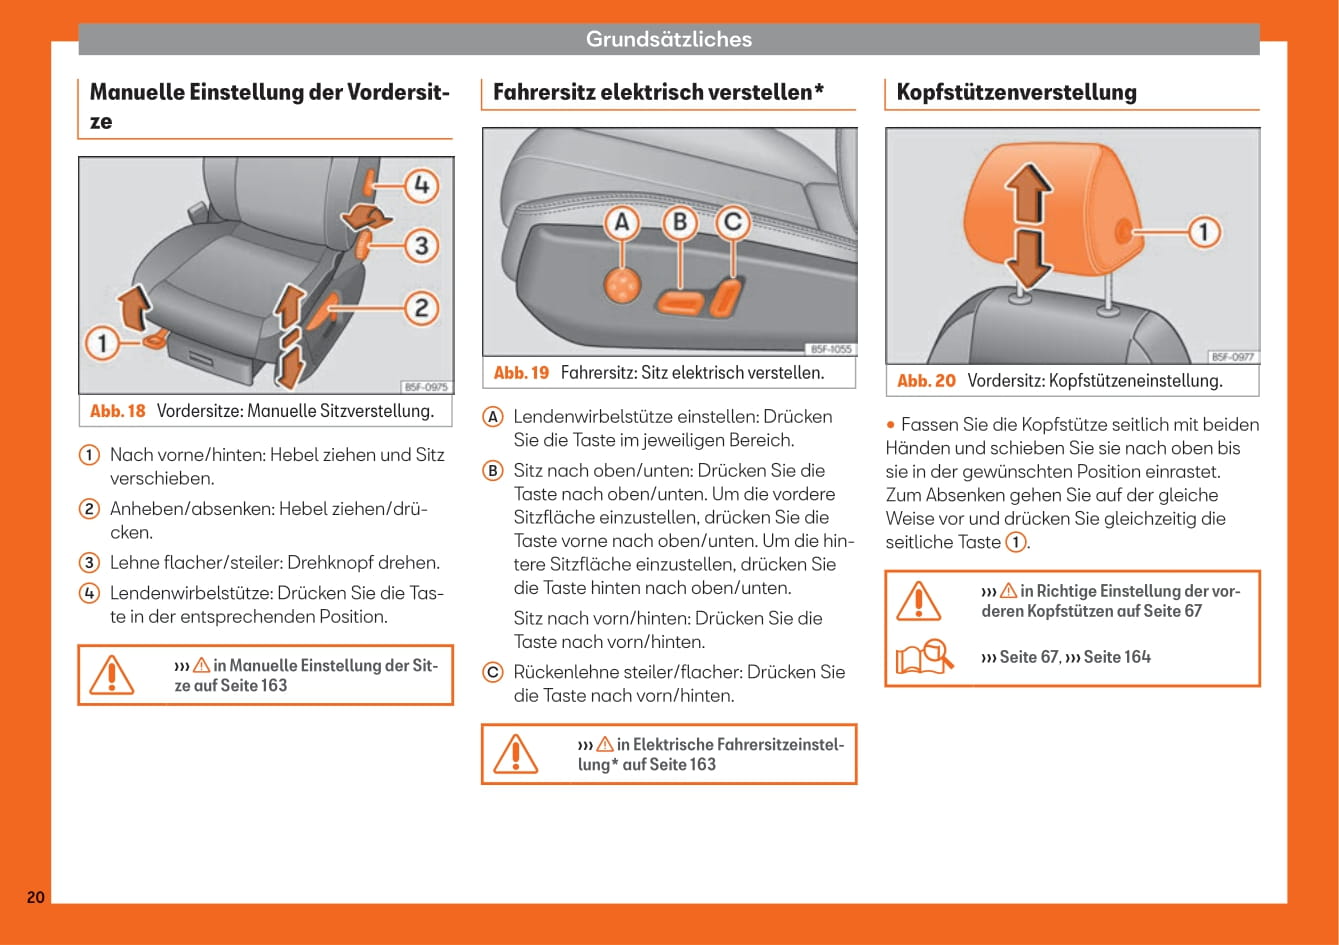 2018-2019 Seat Leon Owner's Manual | German